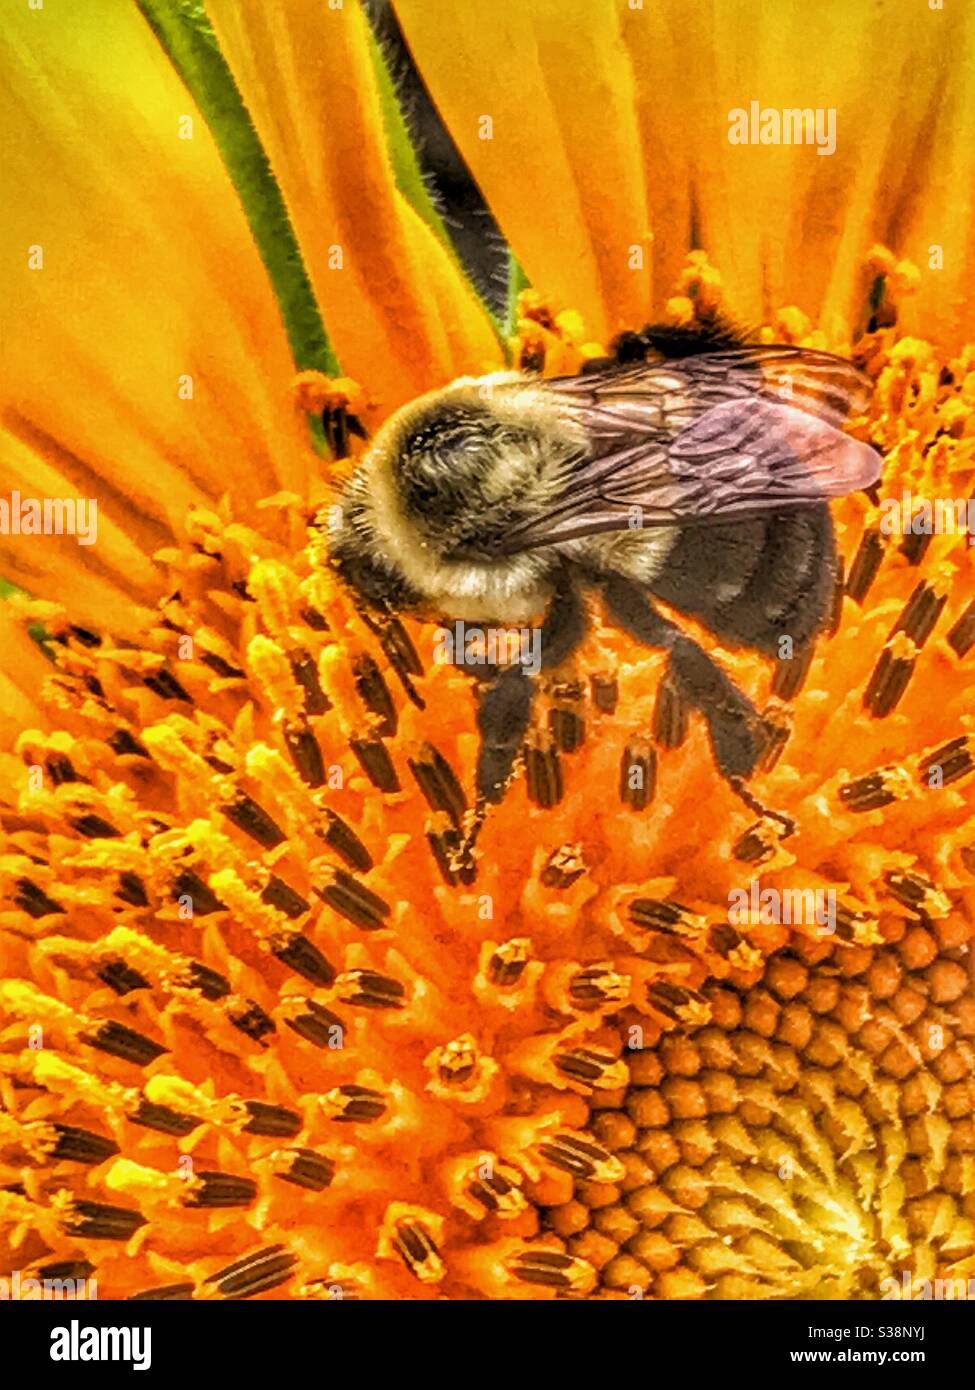 Recogiendo polen de abejas desde un girasol Foto de stock